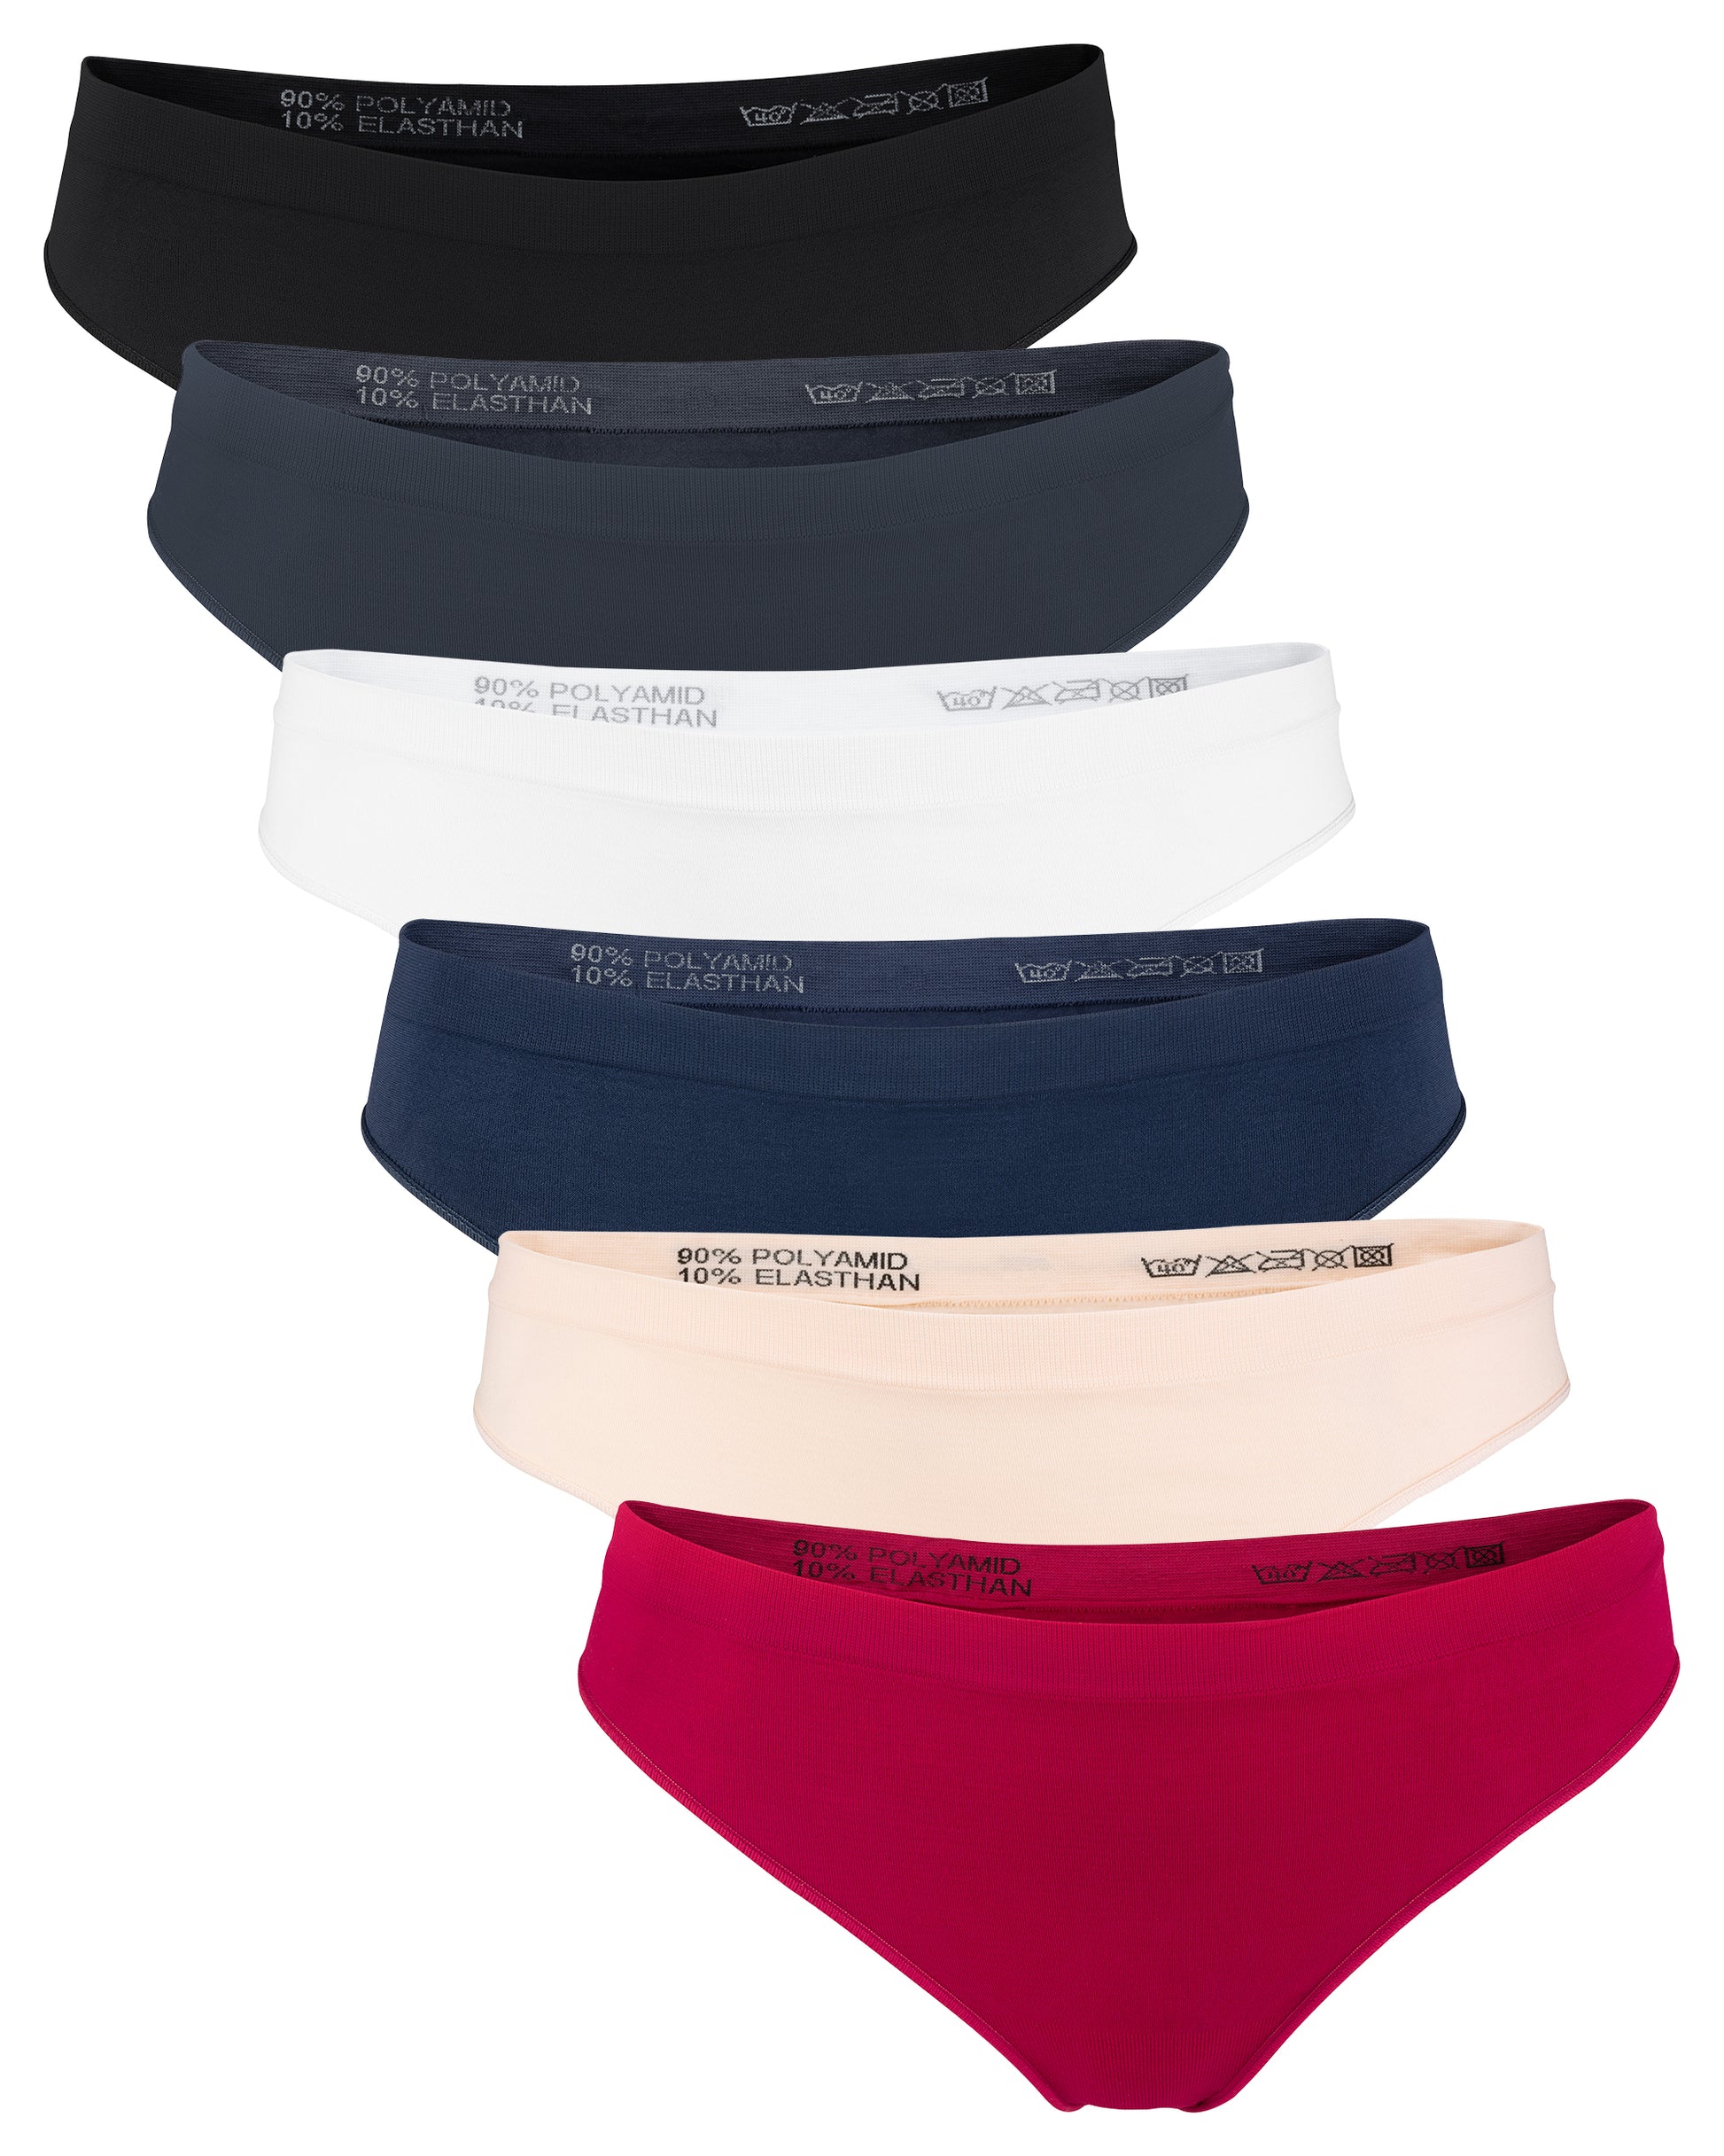 Fabio Farini Panty Damen Hotpants Unterhosen - Frauen Boxershorts Seamless  (Spar-Set, 6-St) angenehmes Tragegefühl ohne Nähte, zufällig ausgewählte  Farben